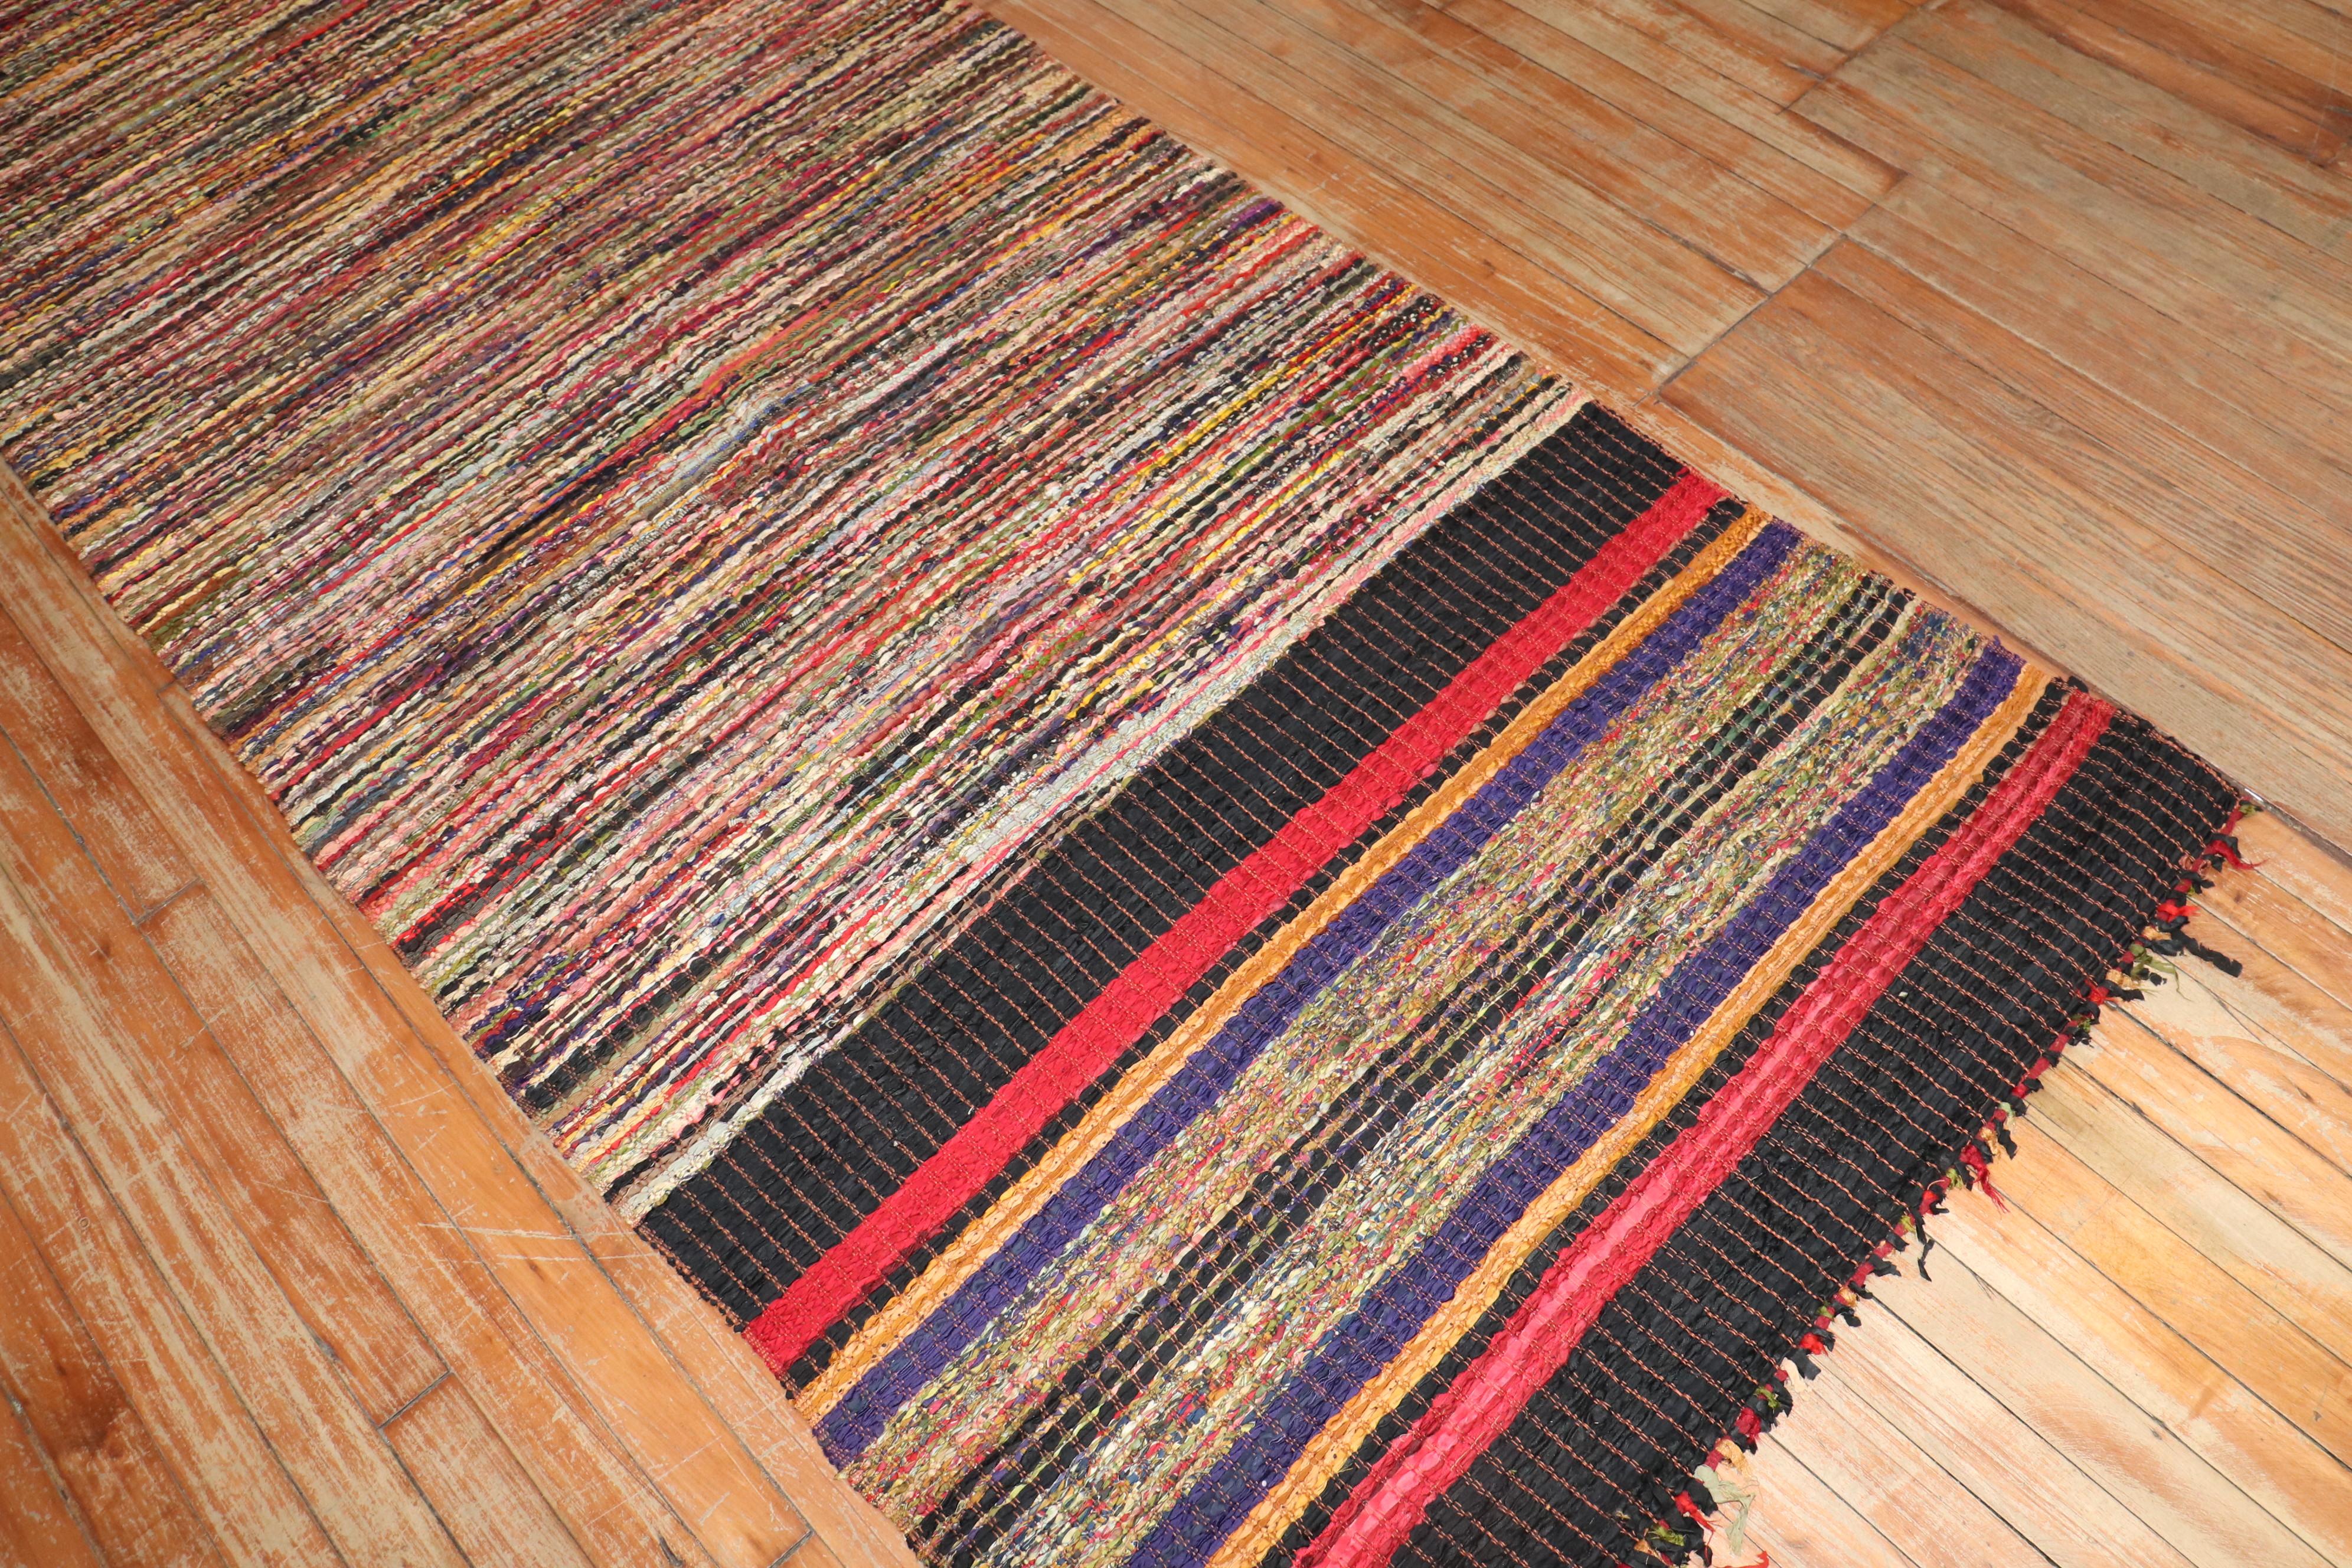 Vereinigte Staaten, Anfang 20. Jahrhundert

Ein seltener amerikanischer Rag-Teppich aus Seide und Wolle Runne mit einem mehrfarbigen, gestreiften Linienmuster

Maße: 3'4'' x 9'4''.